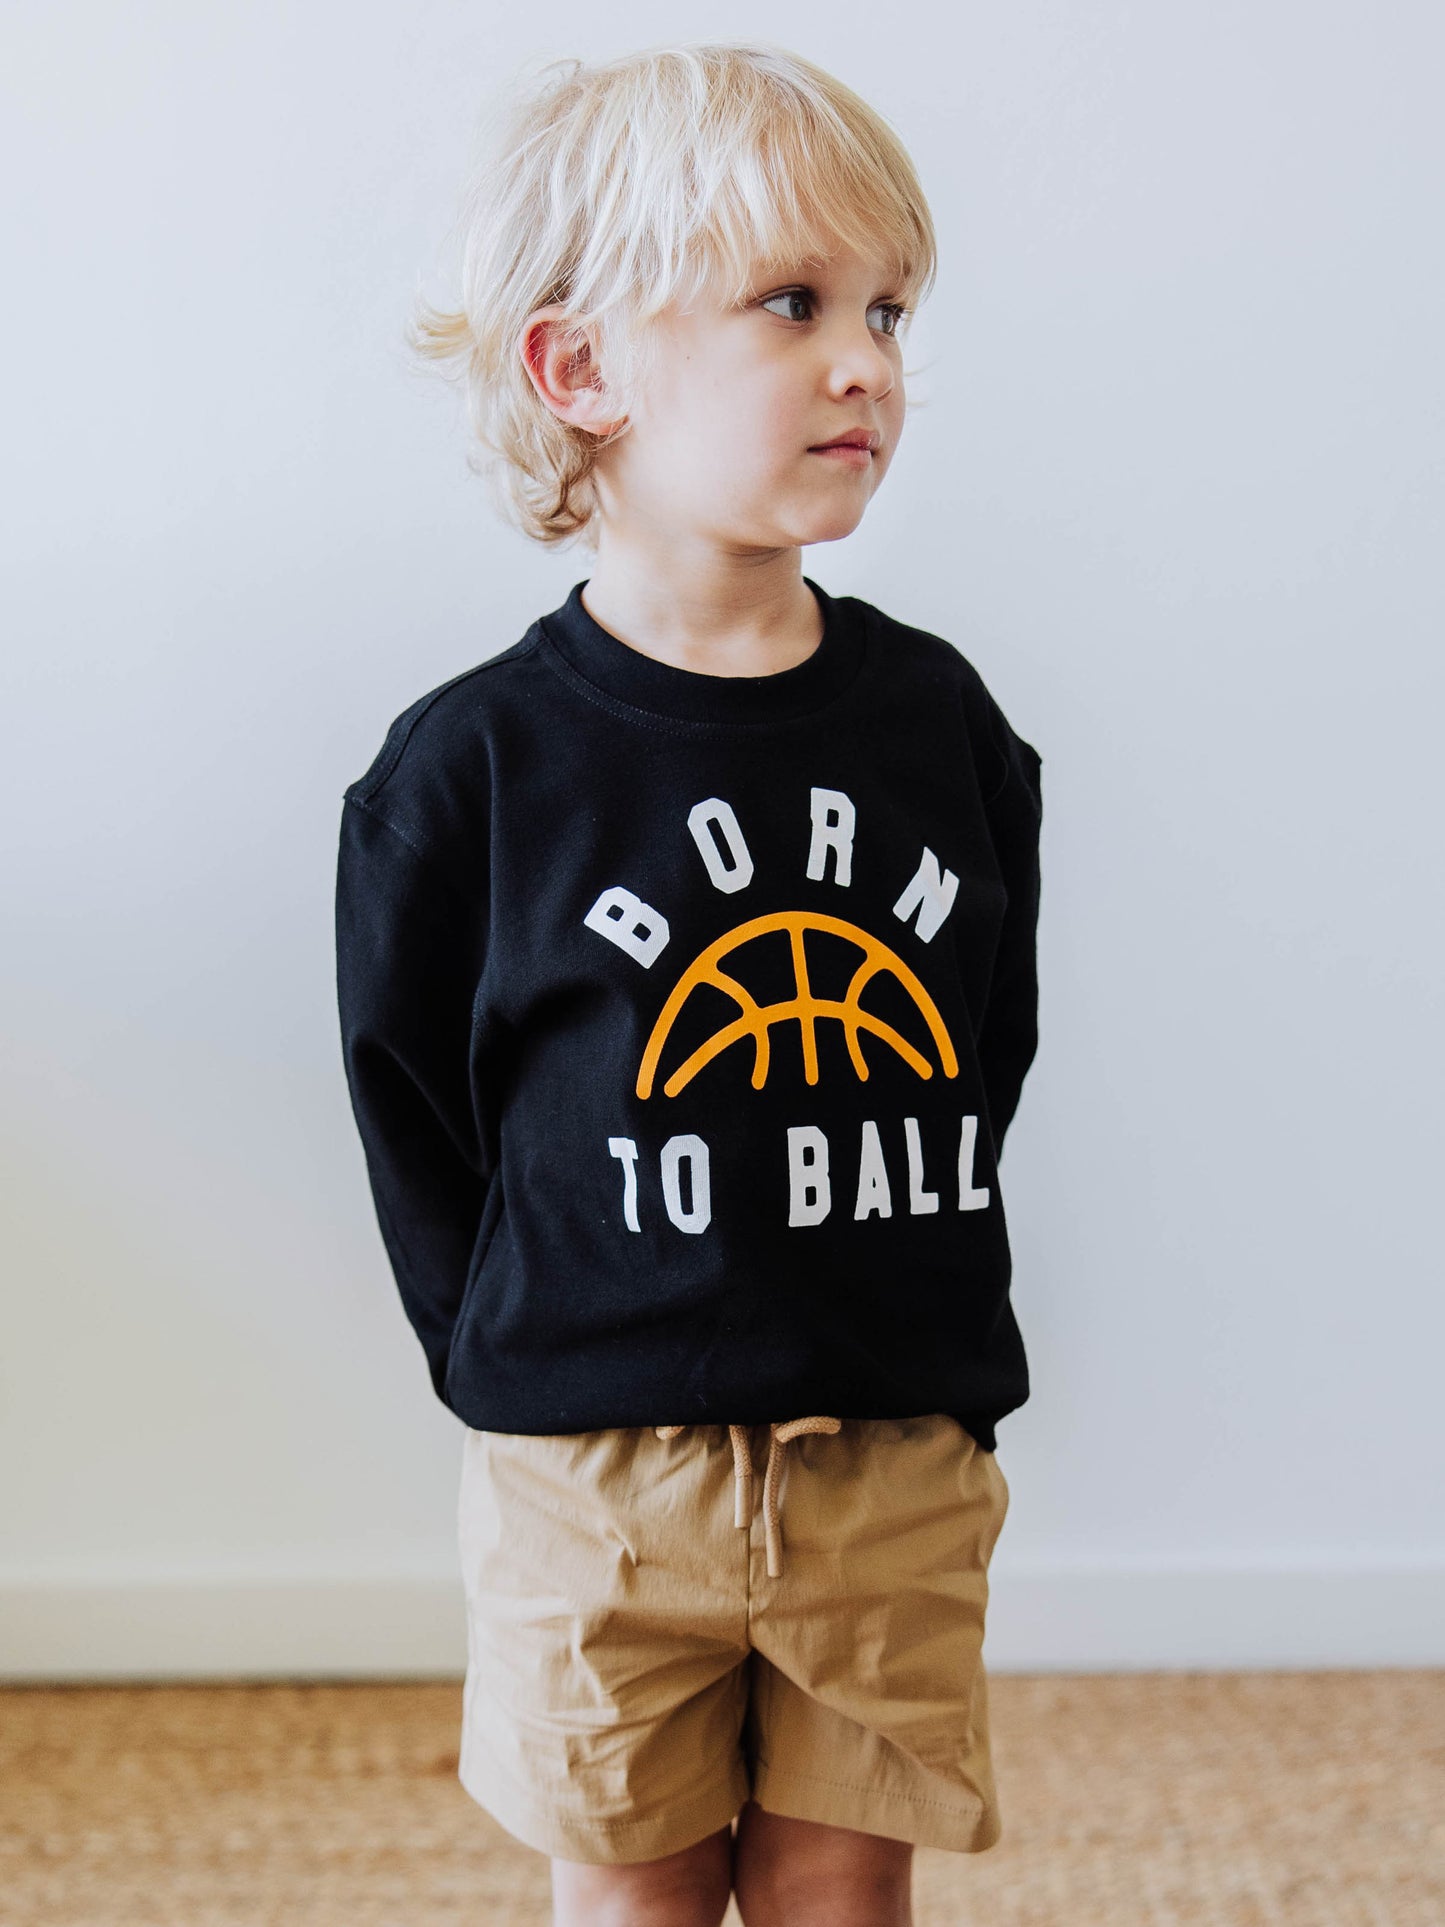 Warm Knit Sweatshirt - Born to Ball Midnight